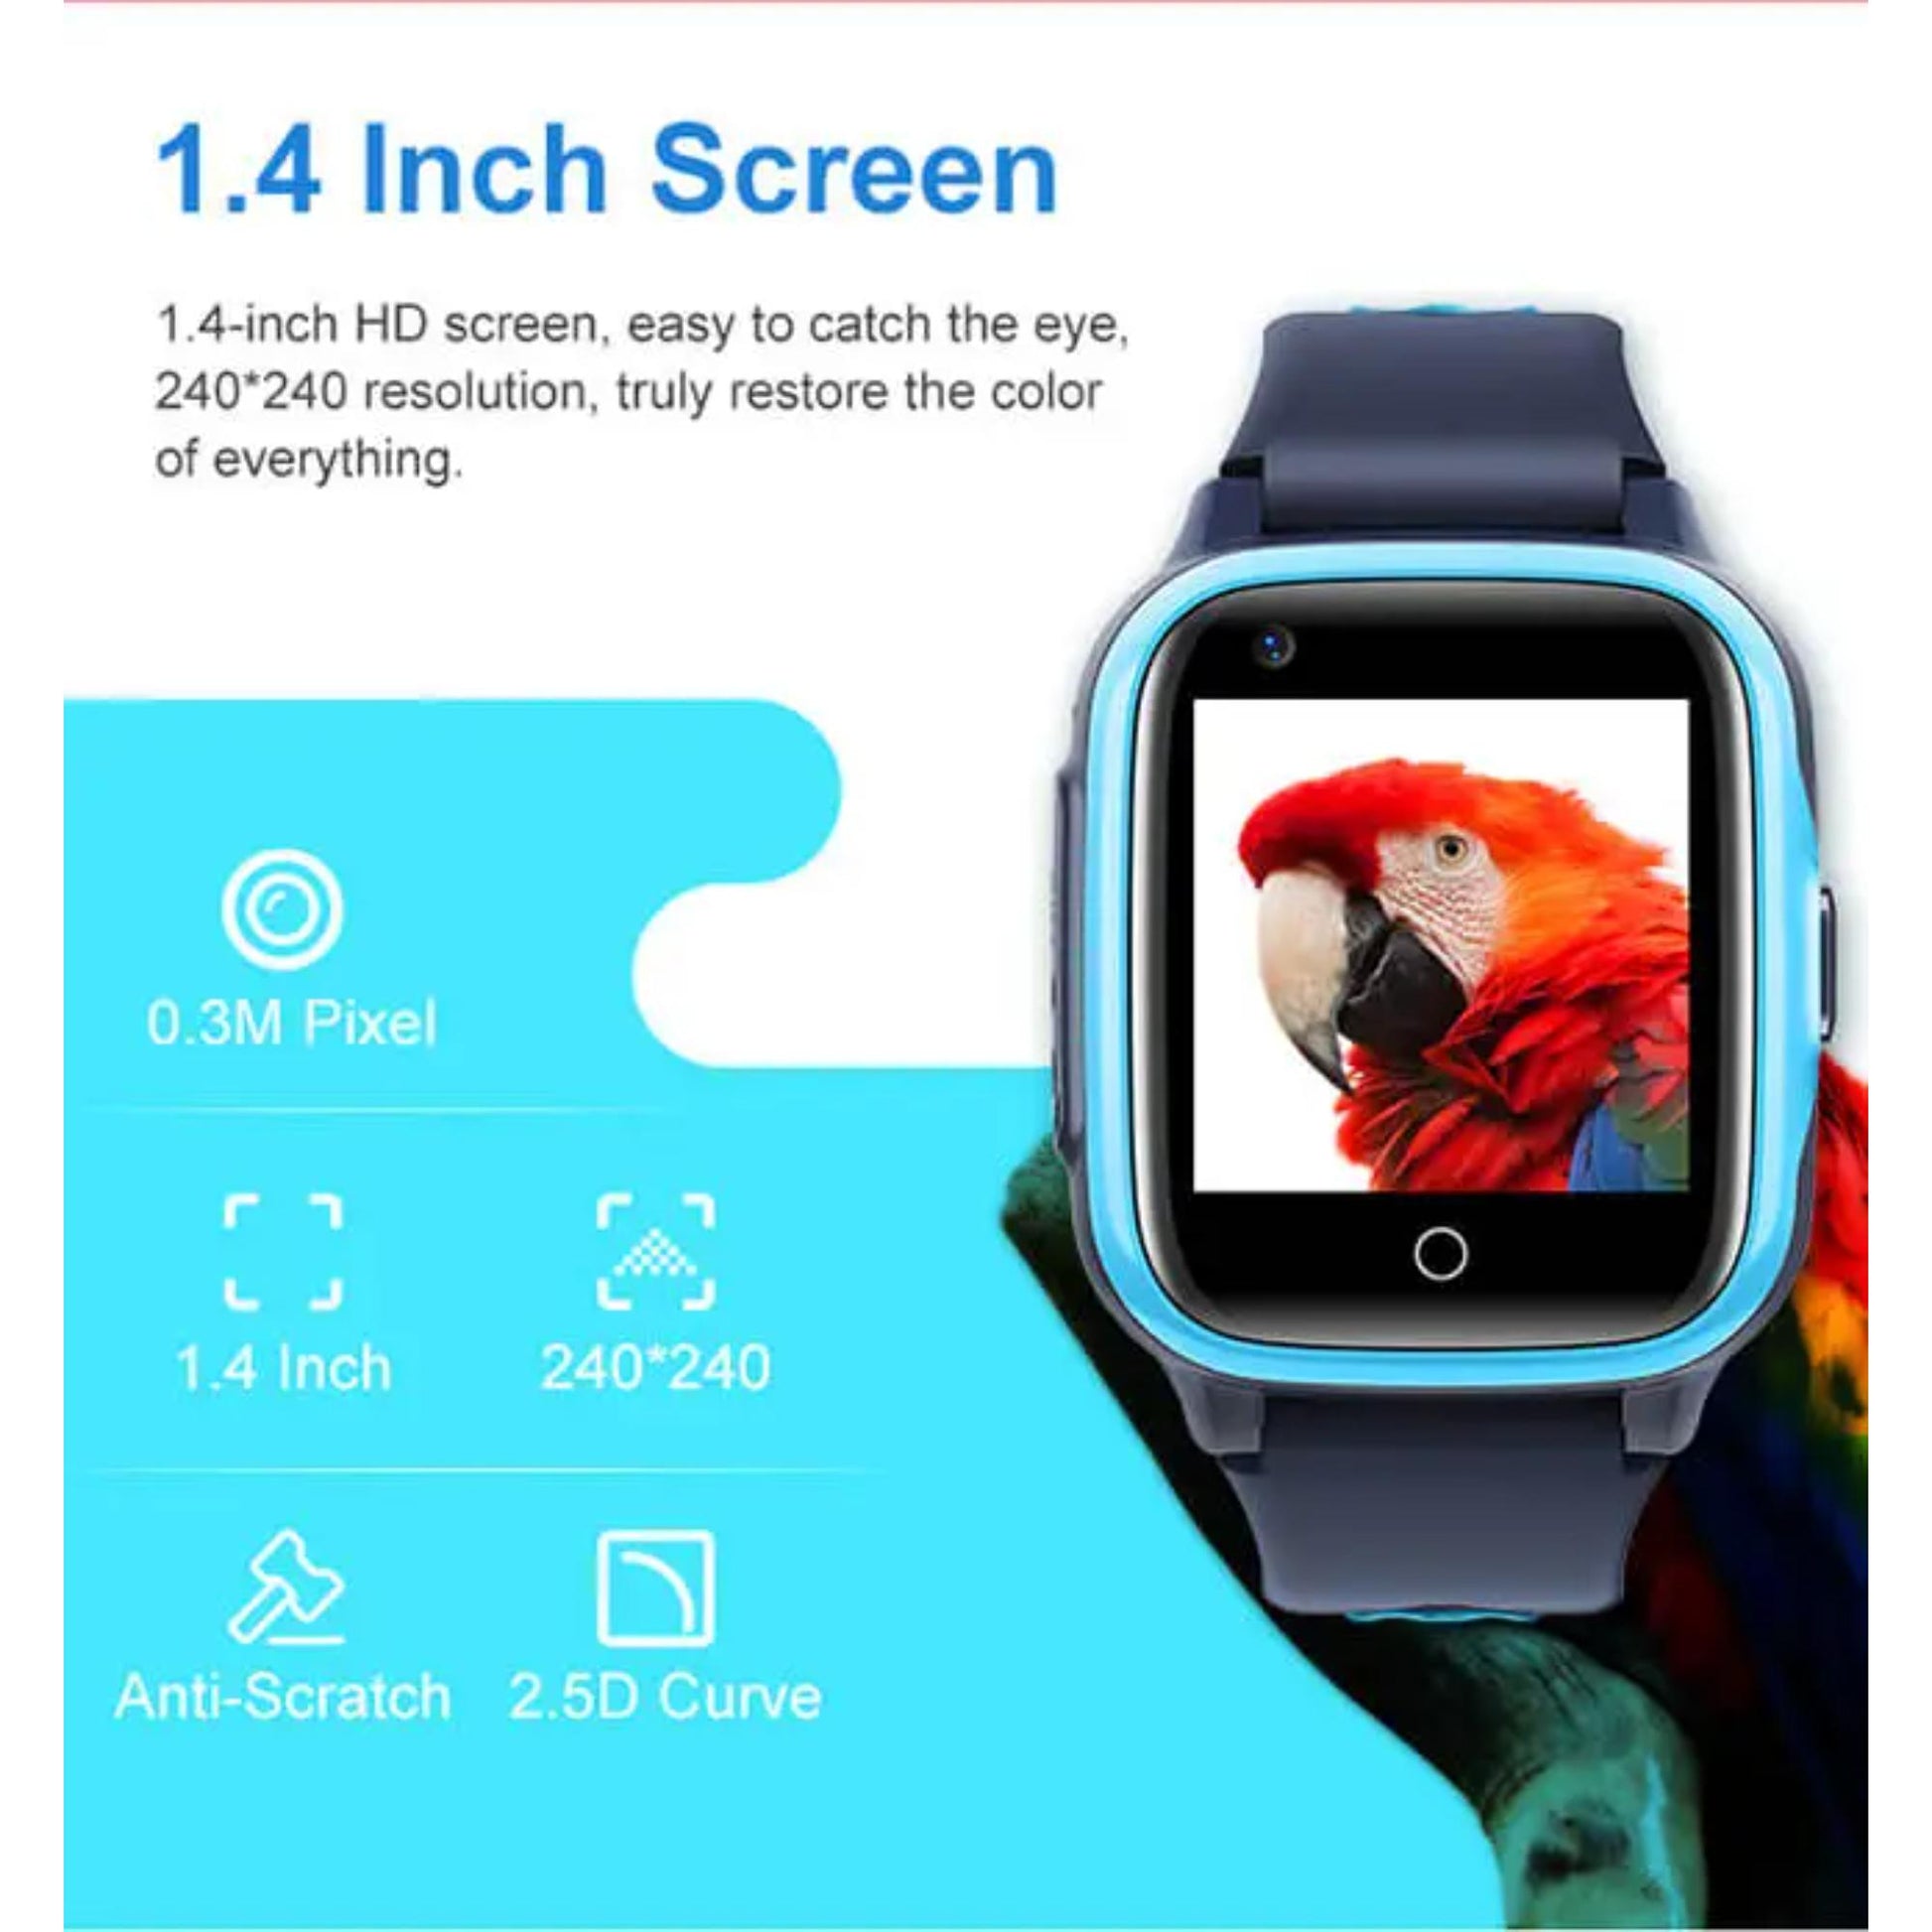 Smartwatch für Kinder - Valdus D31, 1,4-Zoll-TFT-Bildschirm, langlebiger 700mAh-Akku, Echtzeit-GPS-Tracking. | Blue Chilli Electronics.